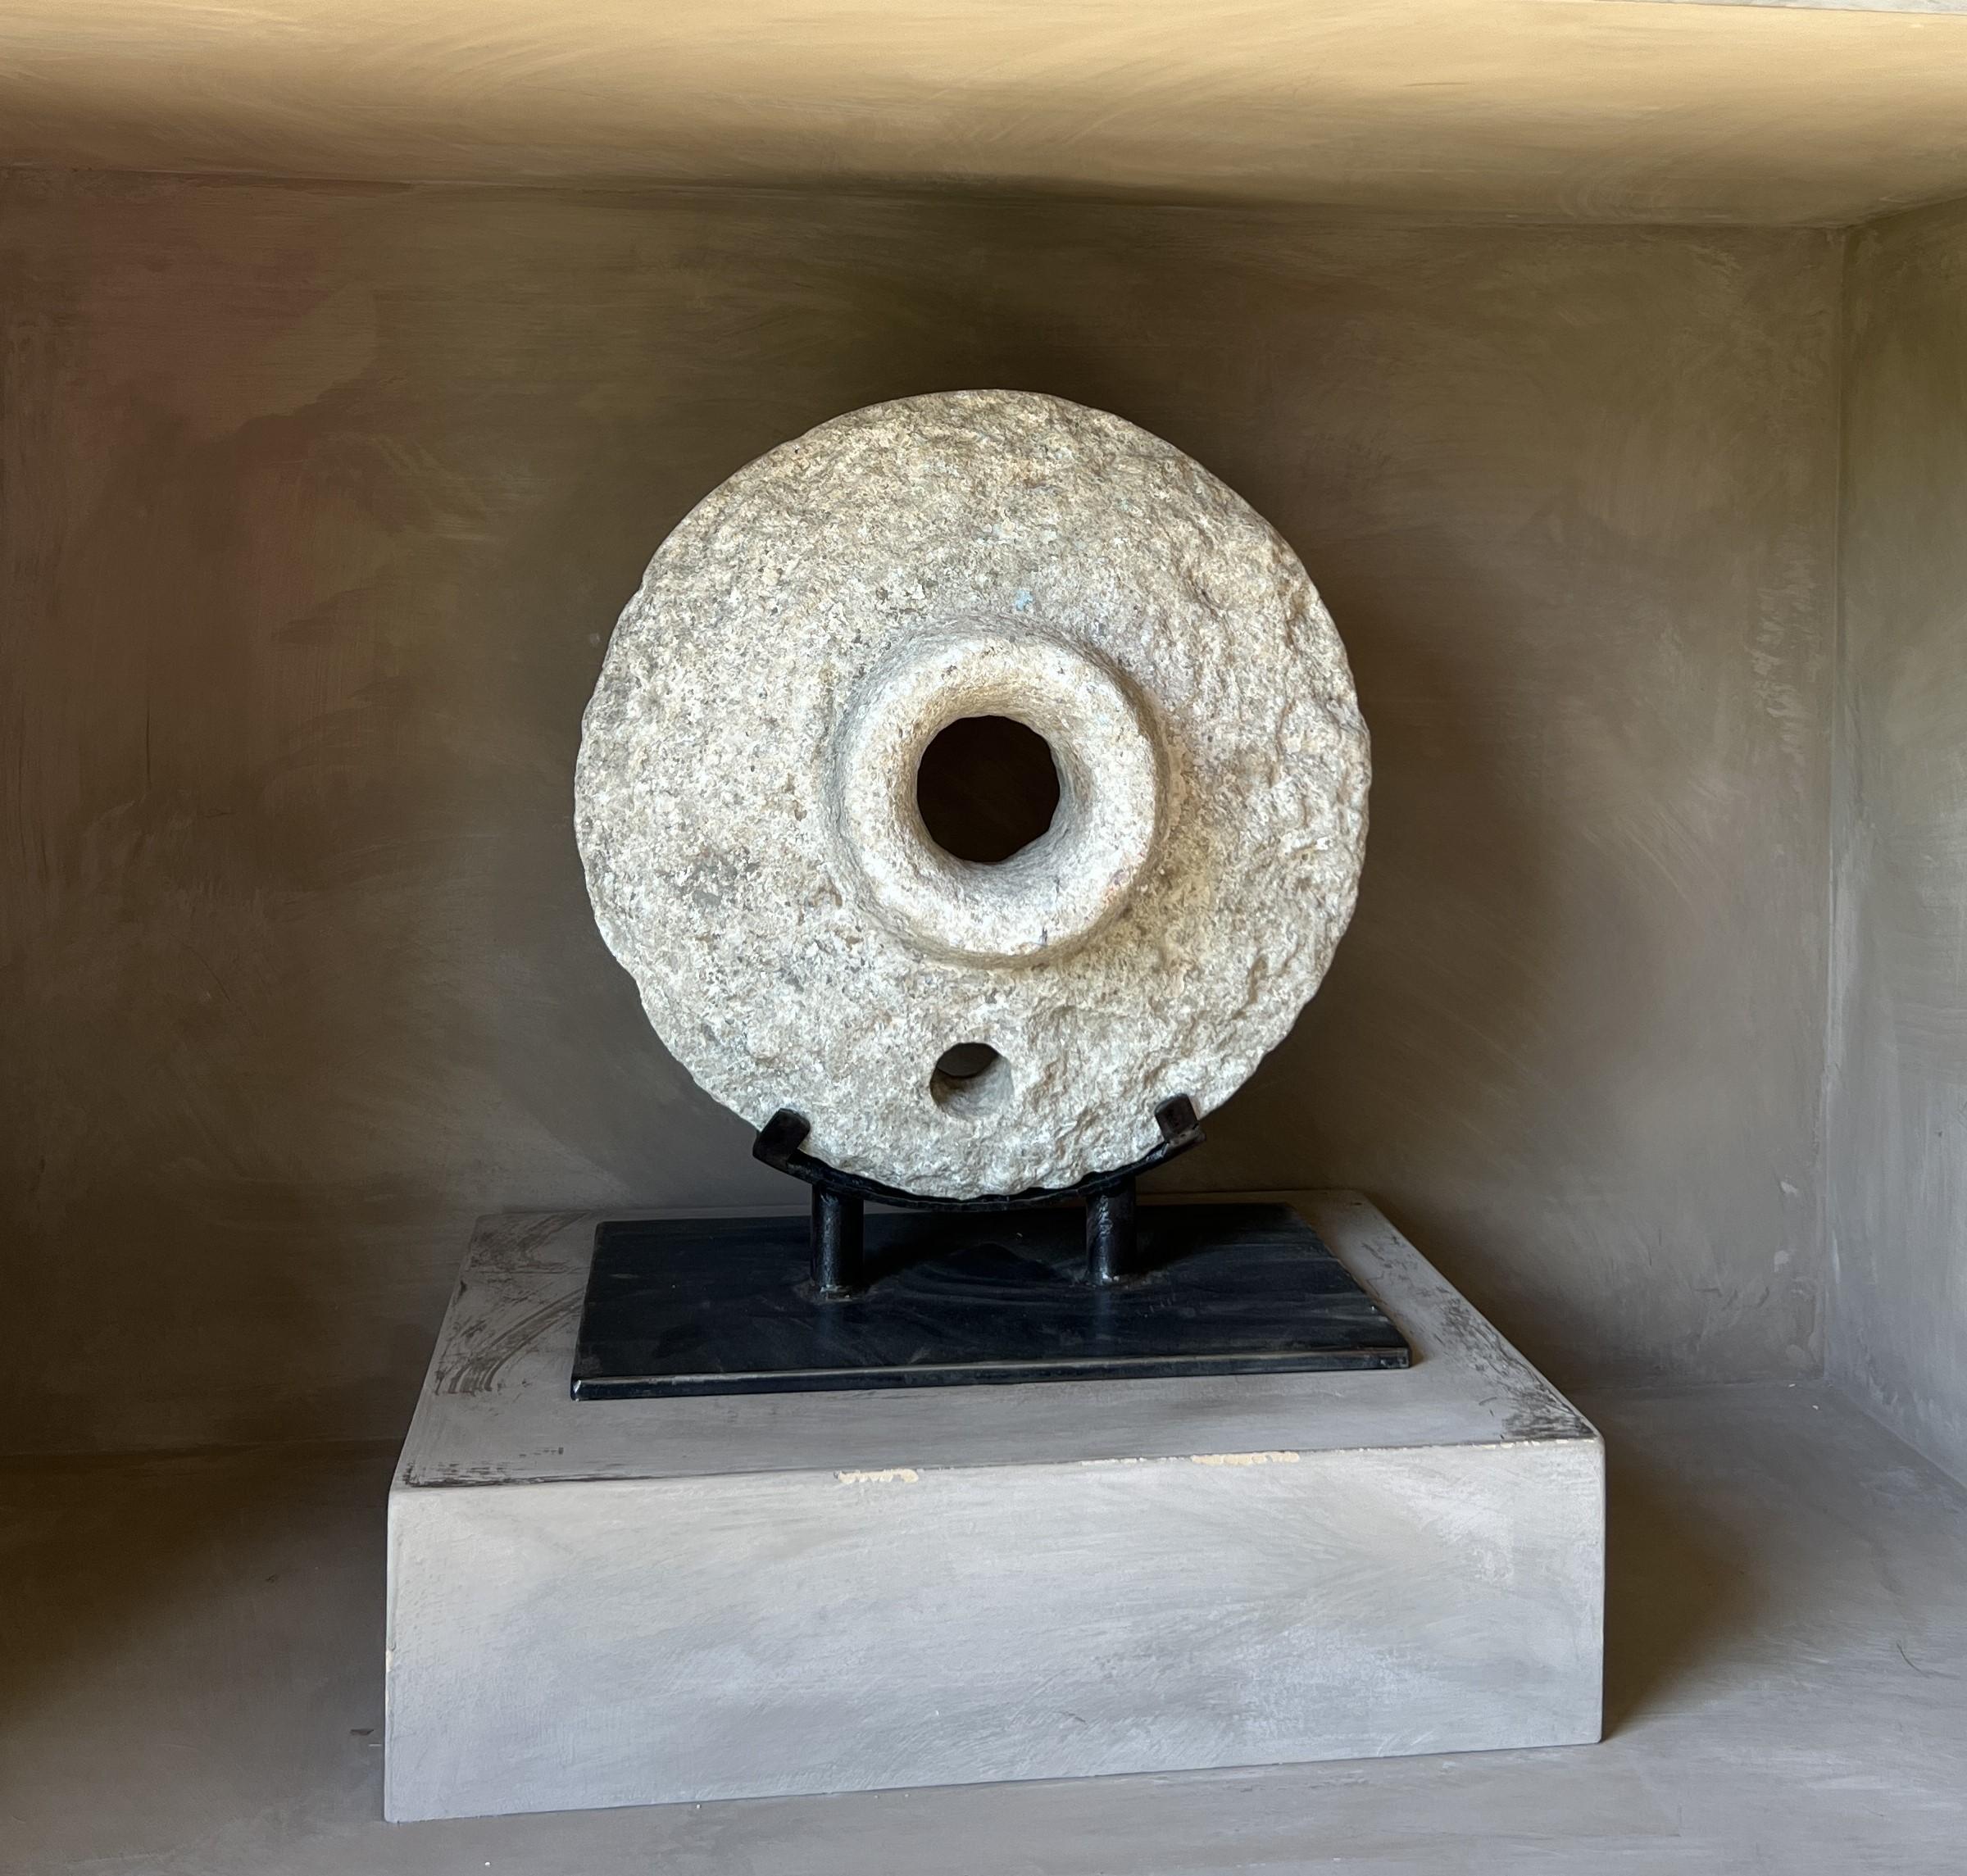 Interessantes rundes Steinobjekt. Wahrscheinlich der Deckel eines Steinmörtels, wie er in Südostasien gefunden wurde. 
Auf einem speziell angefertigten Ständer montiert, hat sie eine eigene skulpturale Qualität. Kombiniert mit einer schönen Farbe